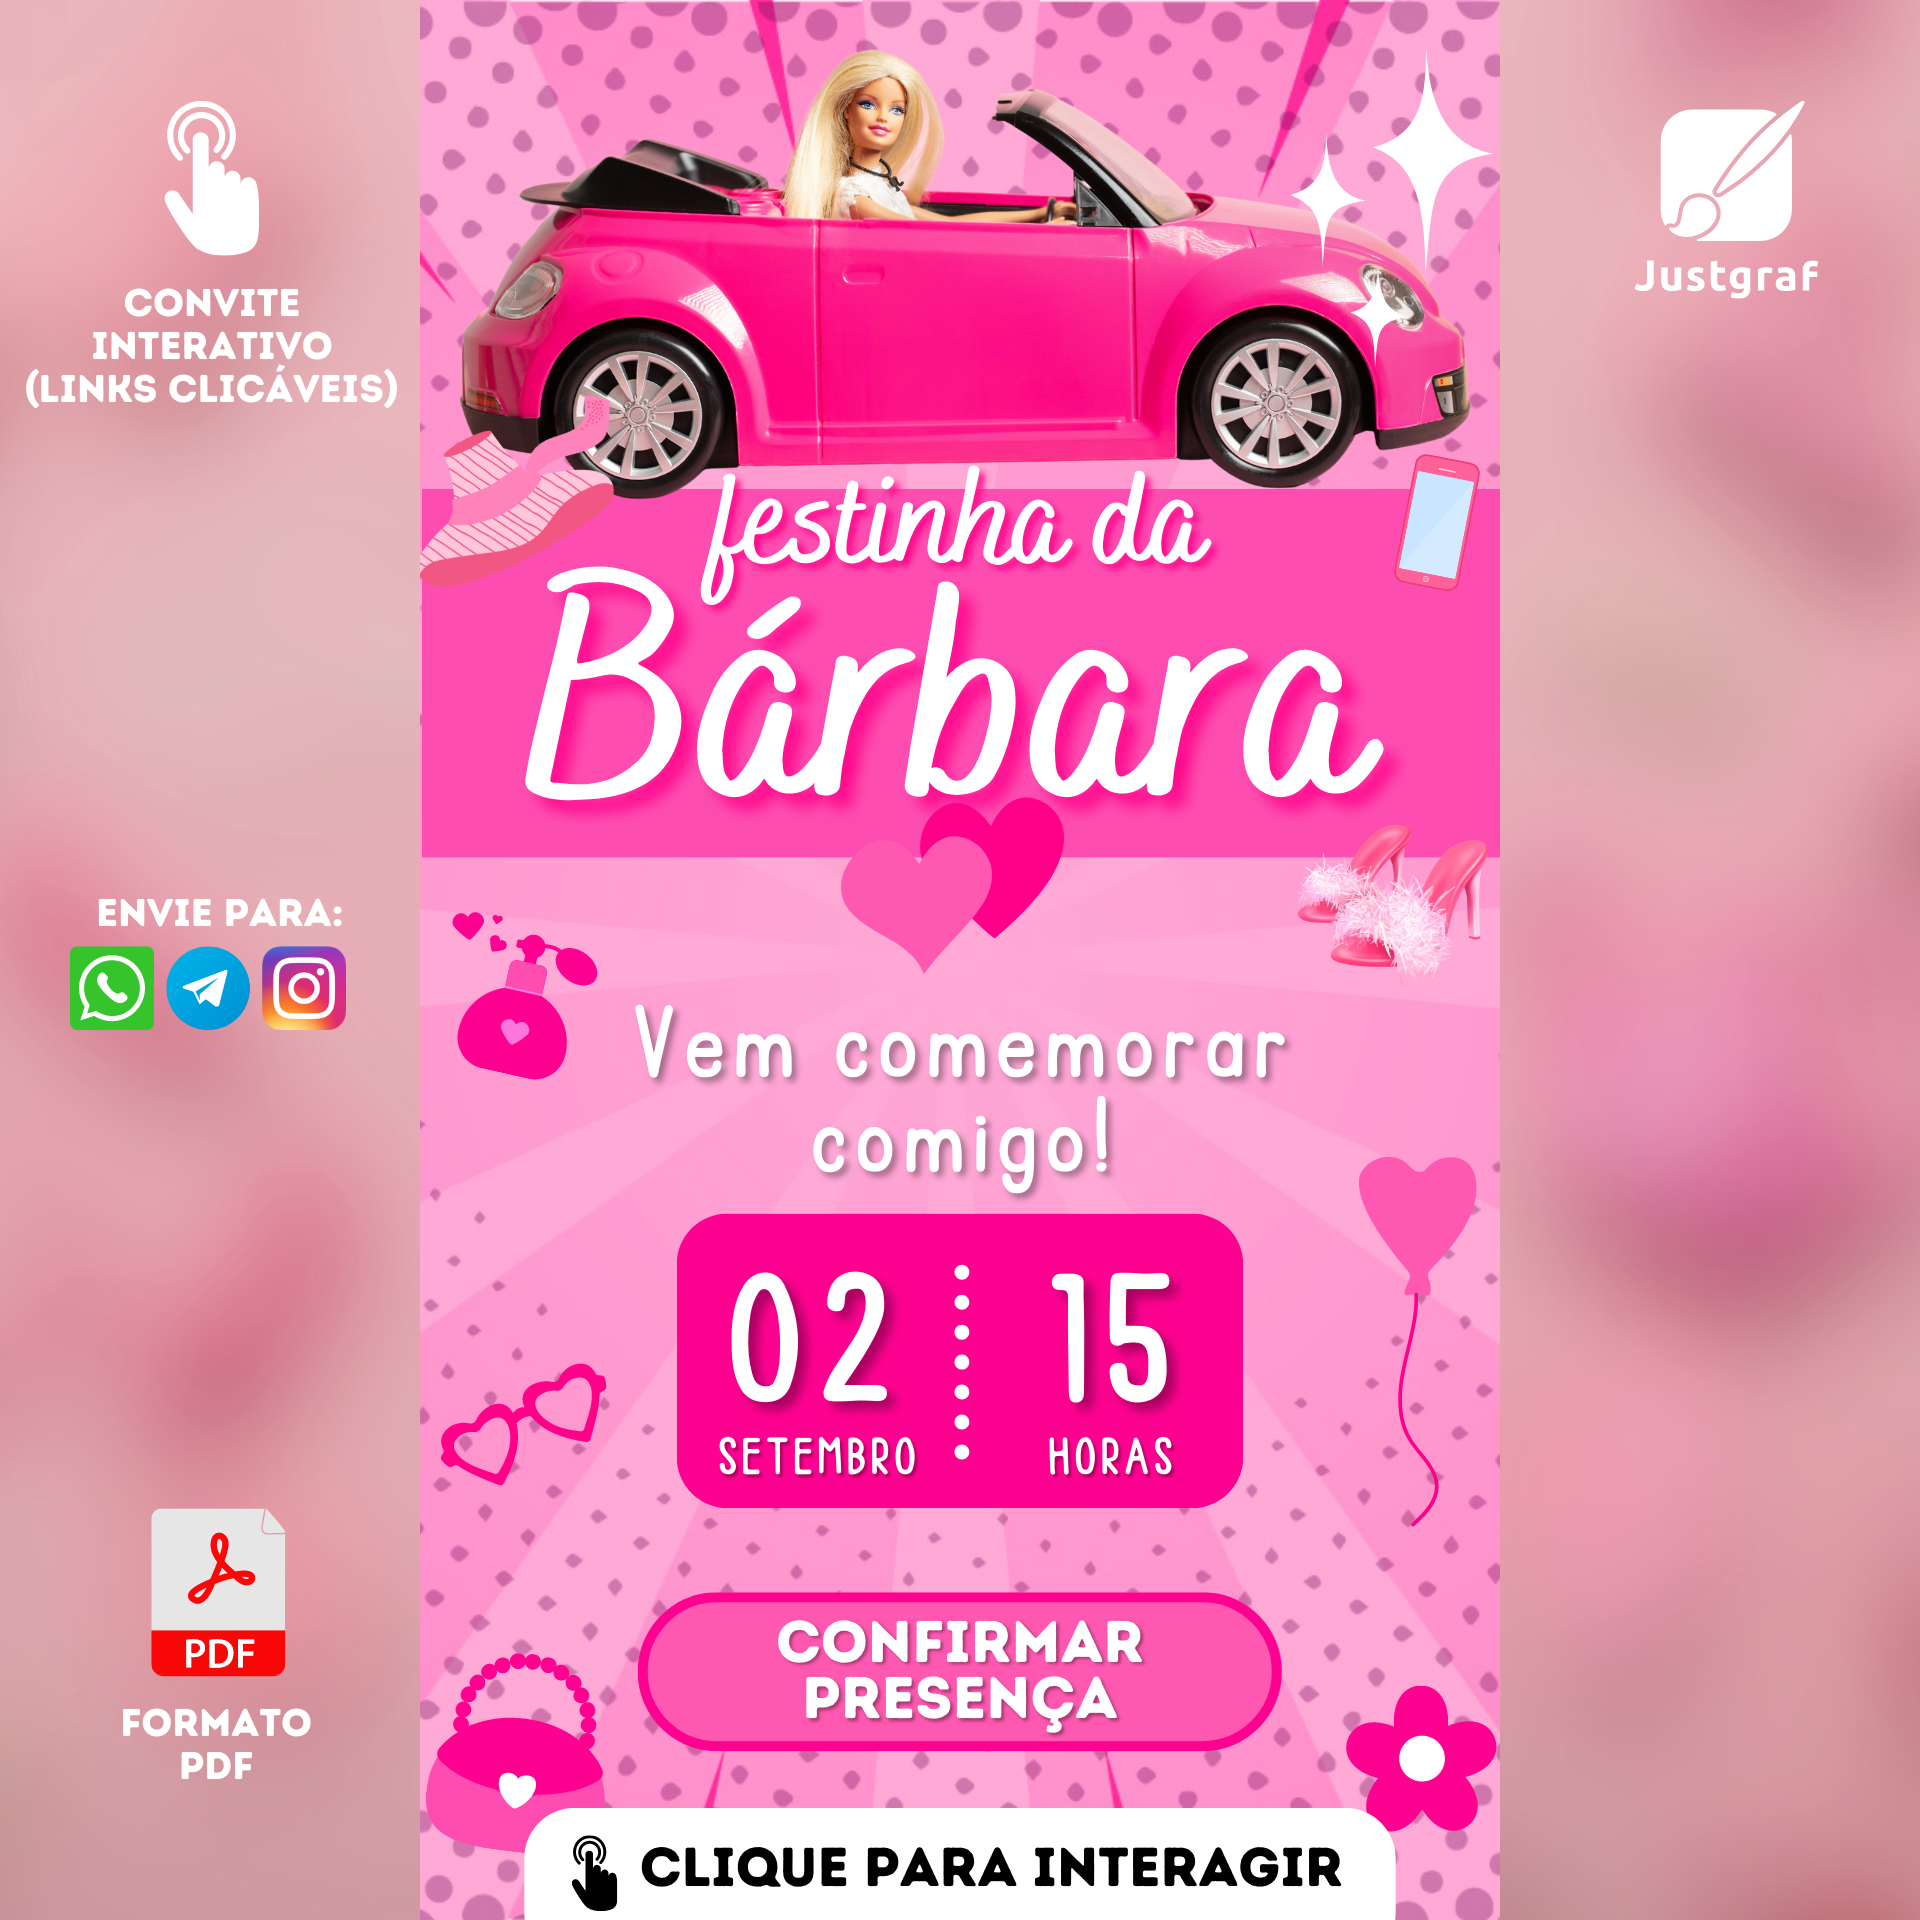 Convite Virtual Barbie com Link Clicável